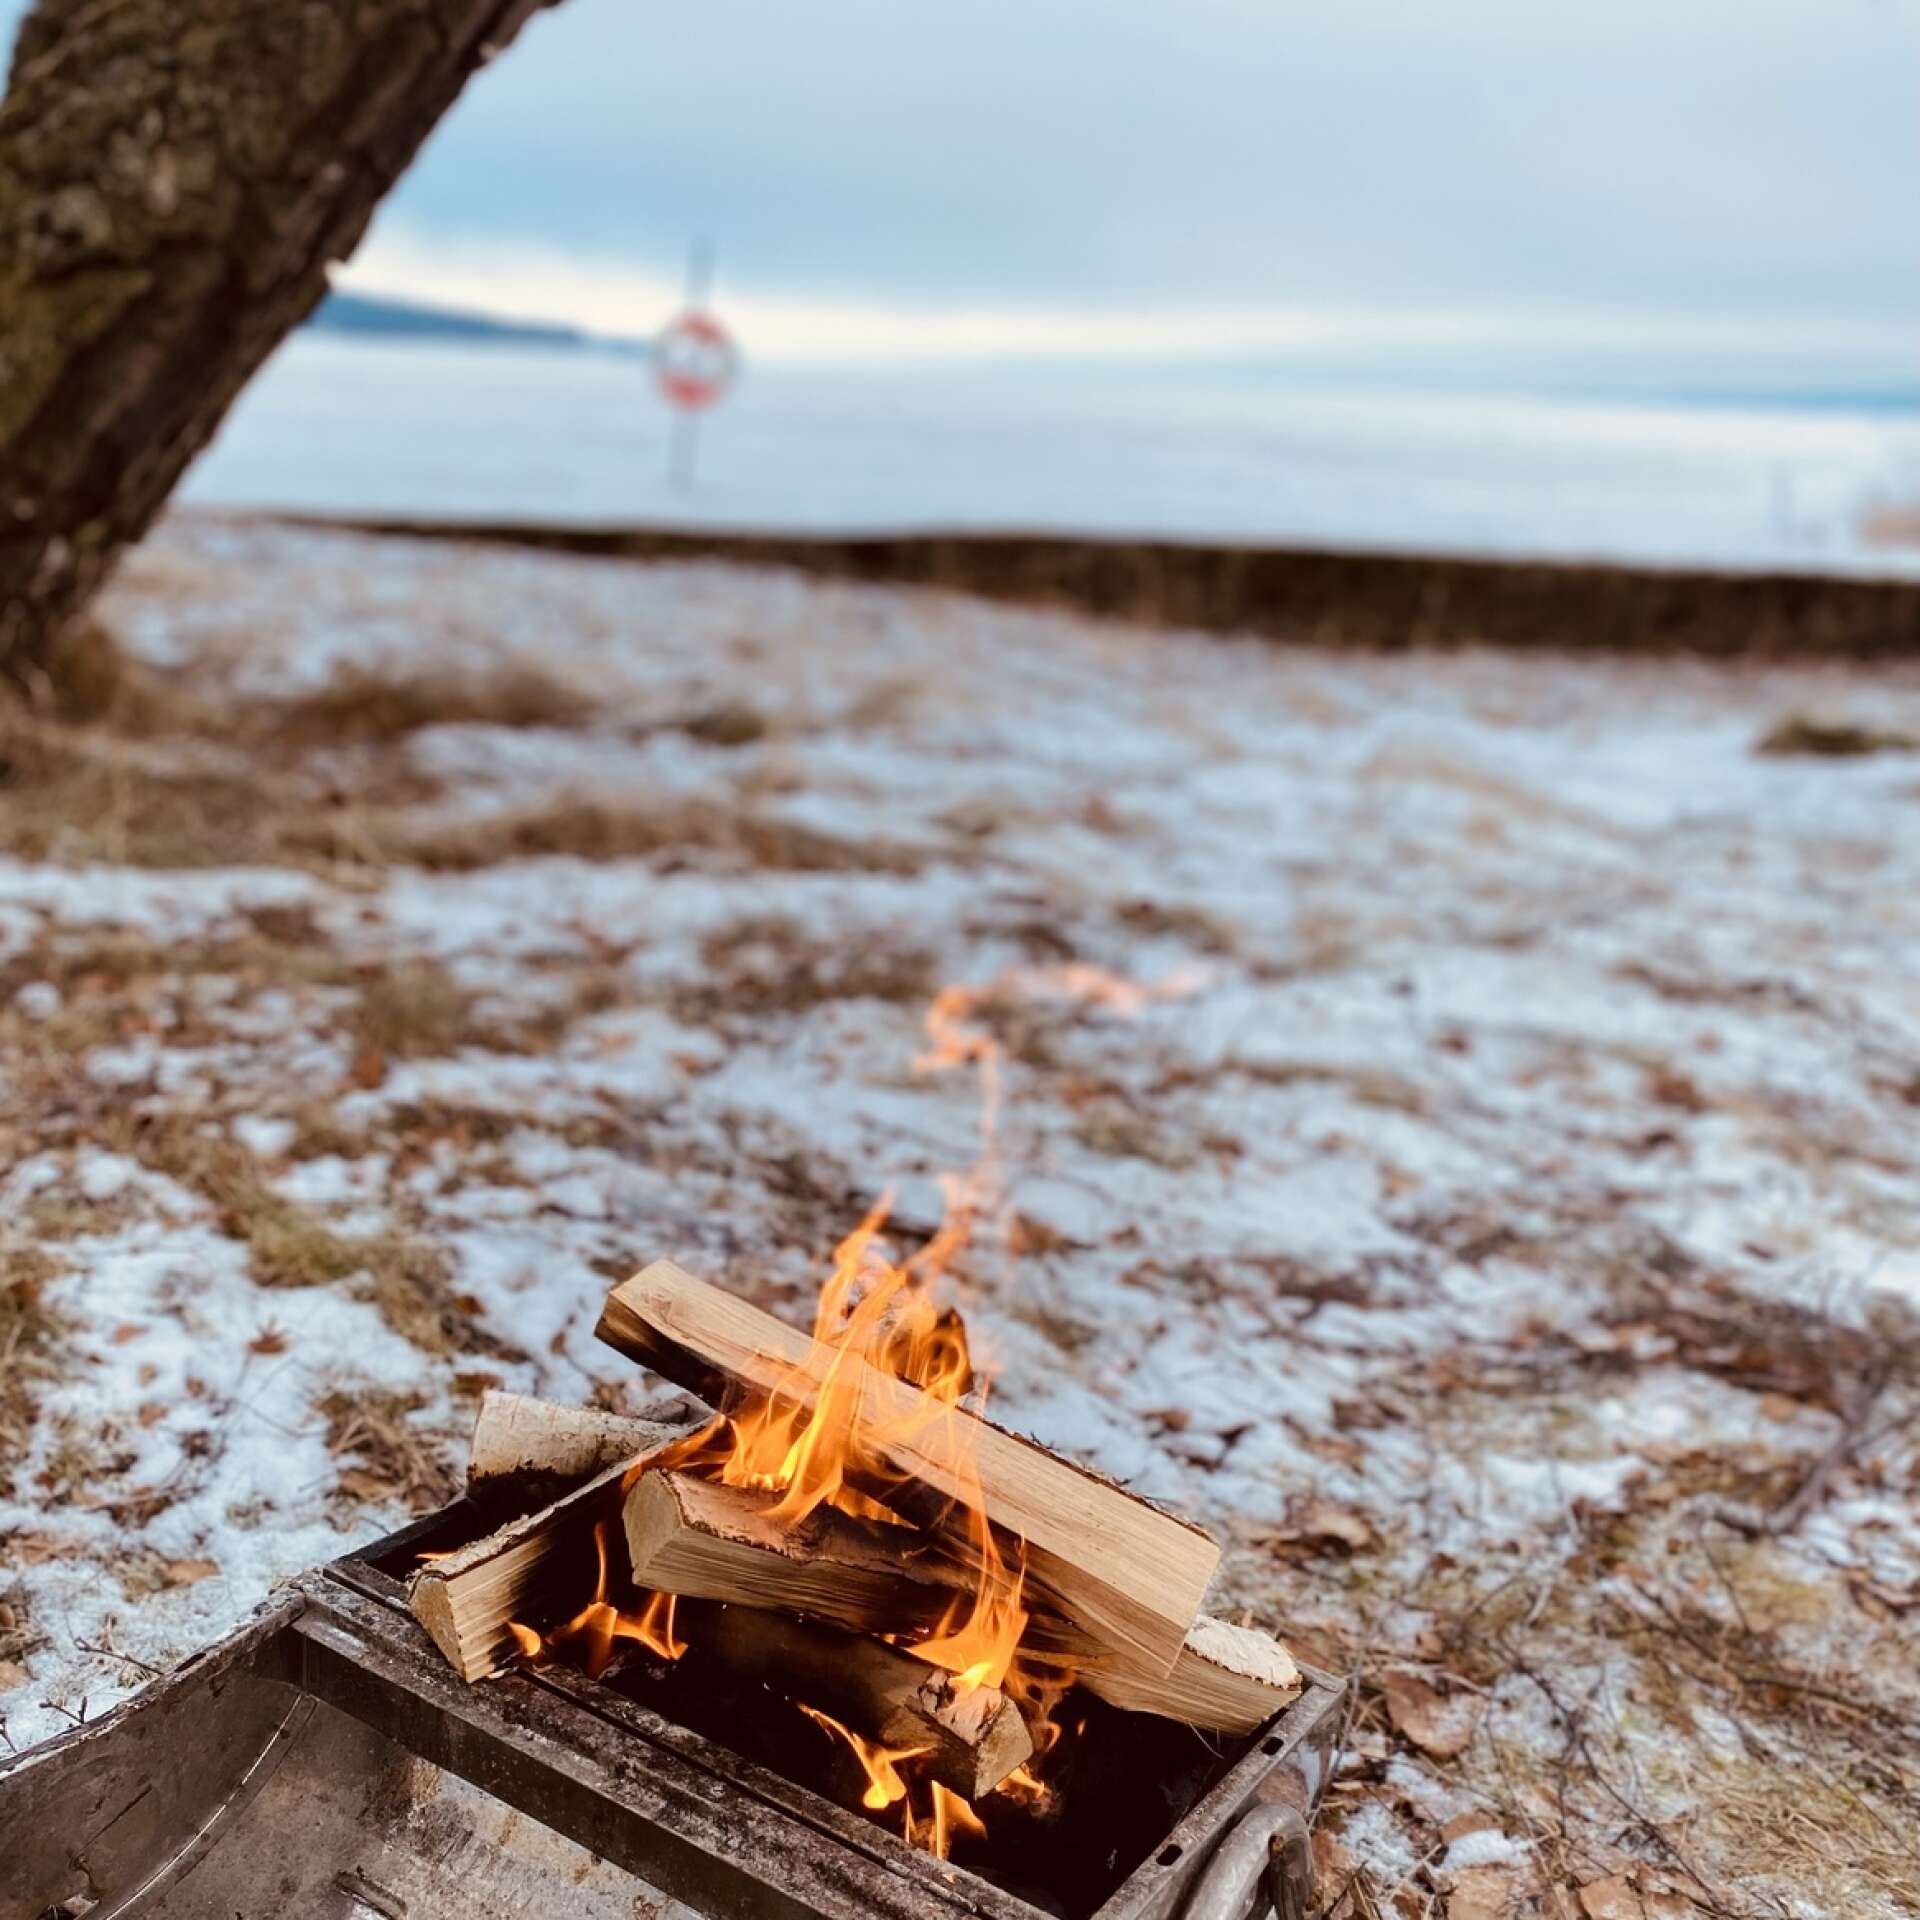 En vintrig grillutflykt vid sjön är ett perfekt sätt att tillbringa en avkopplande sportlovsdag.  Foto: Hanna Sundblad